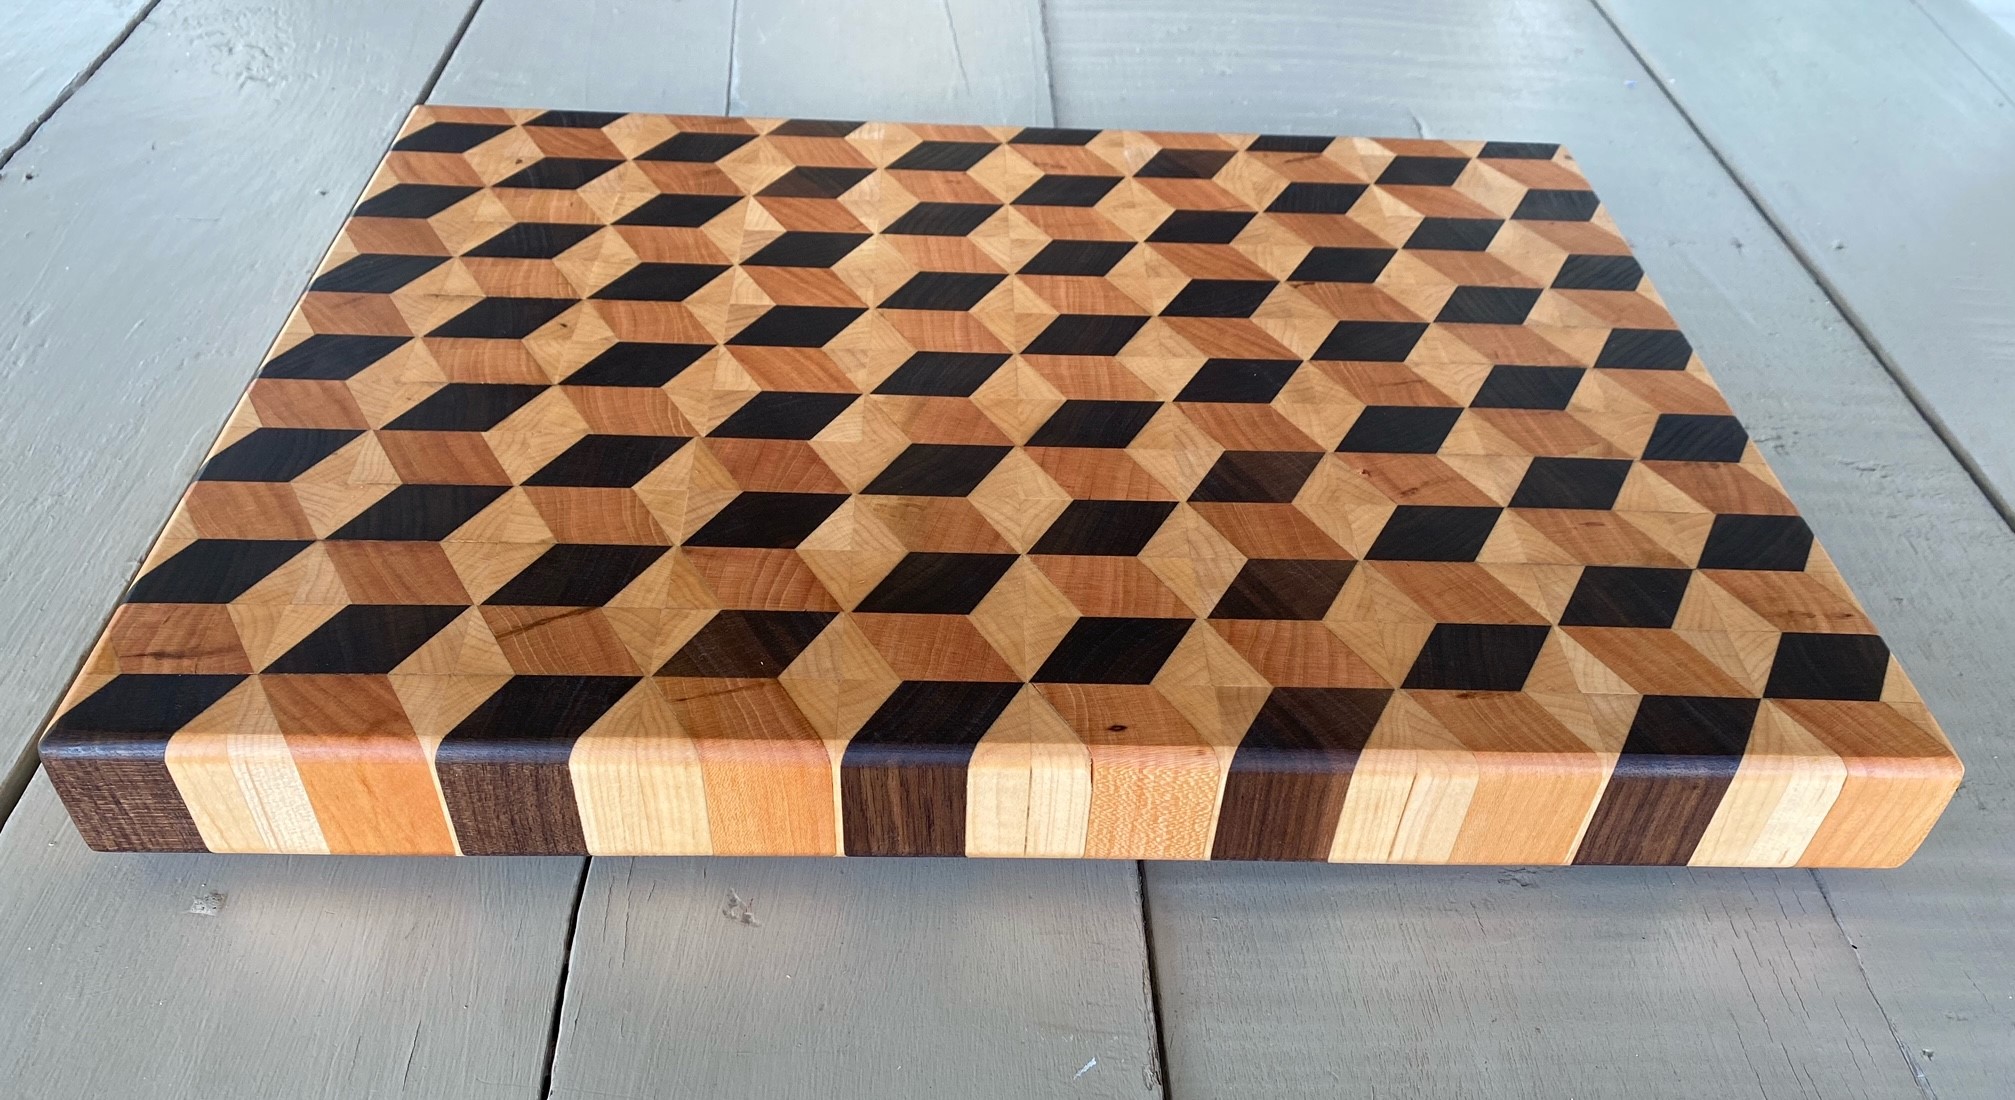 3d blocks cutting board plans